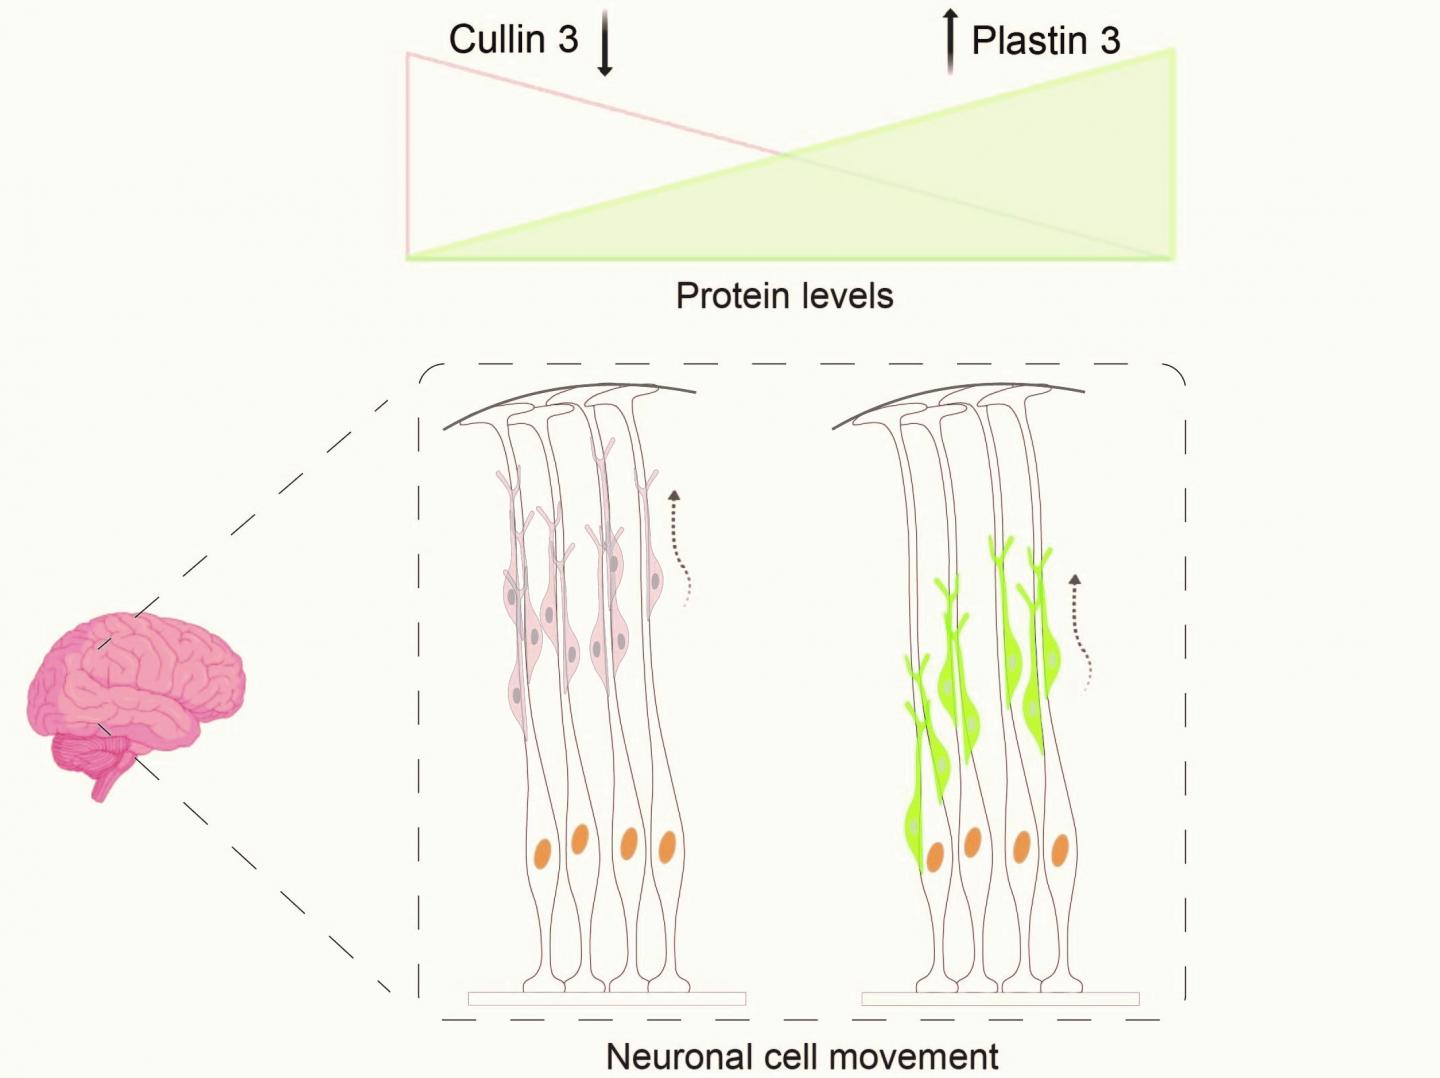 Defektes Cullin 3-Gen fÃ¼hrt zu gefÃ¤hrlicher Protein-Ansammlung